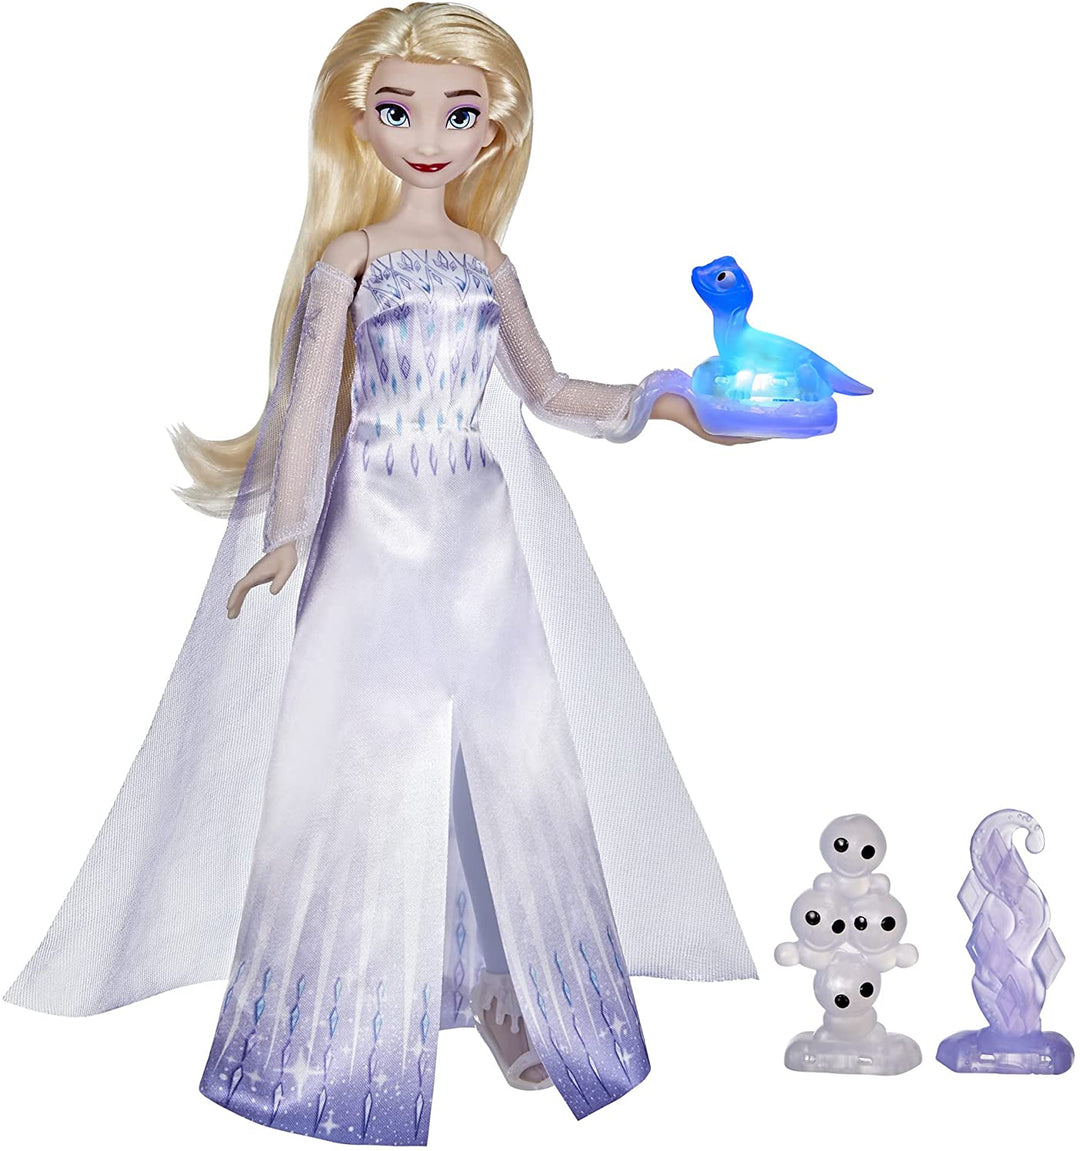 Disney Frozen 2 Elsa e i suoi amici parlanti, bambola di Elsa con oltre 20 suoni e frasi